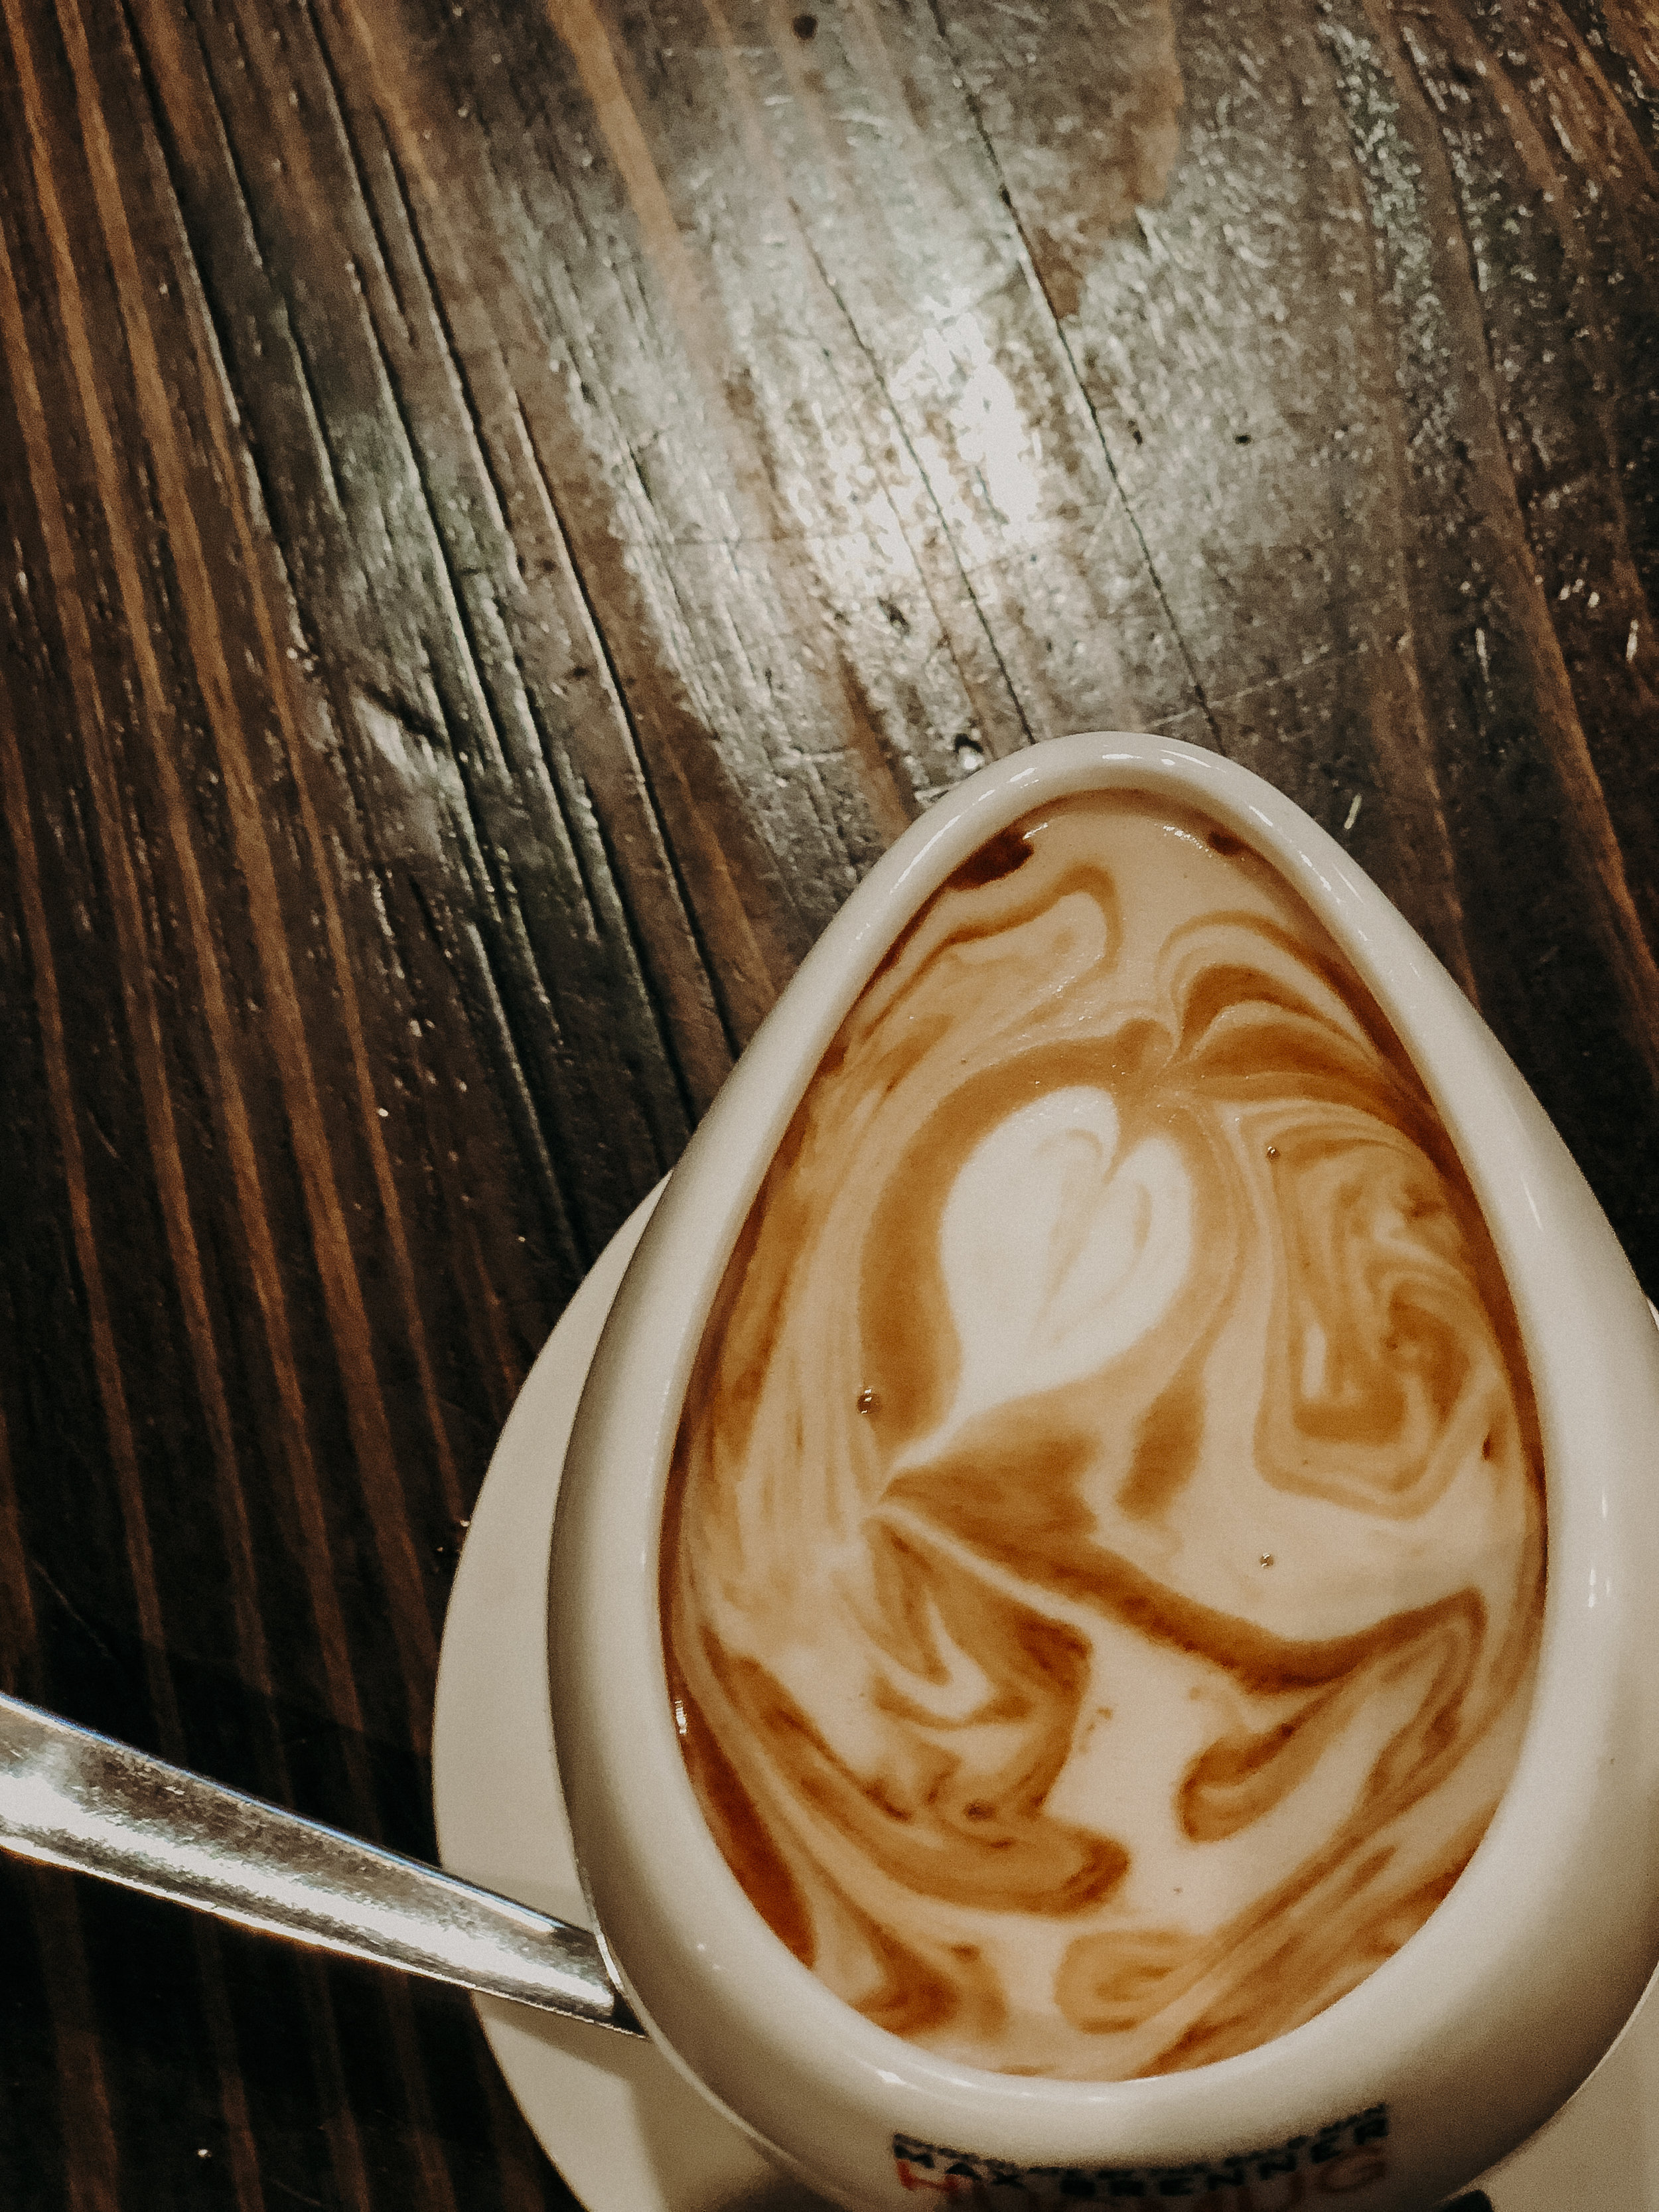  Hug Mug hot chocolate at Max Brenner’s. 